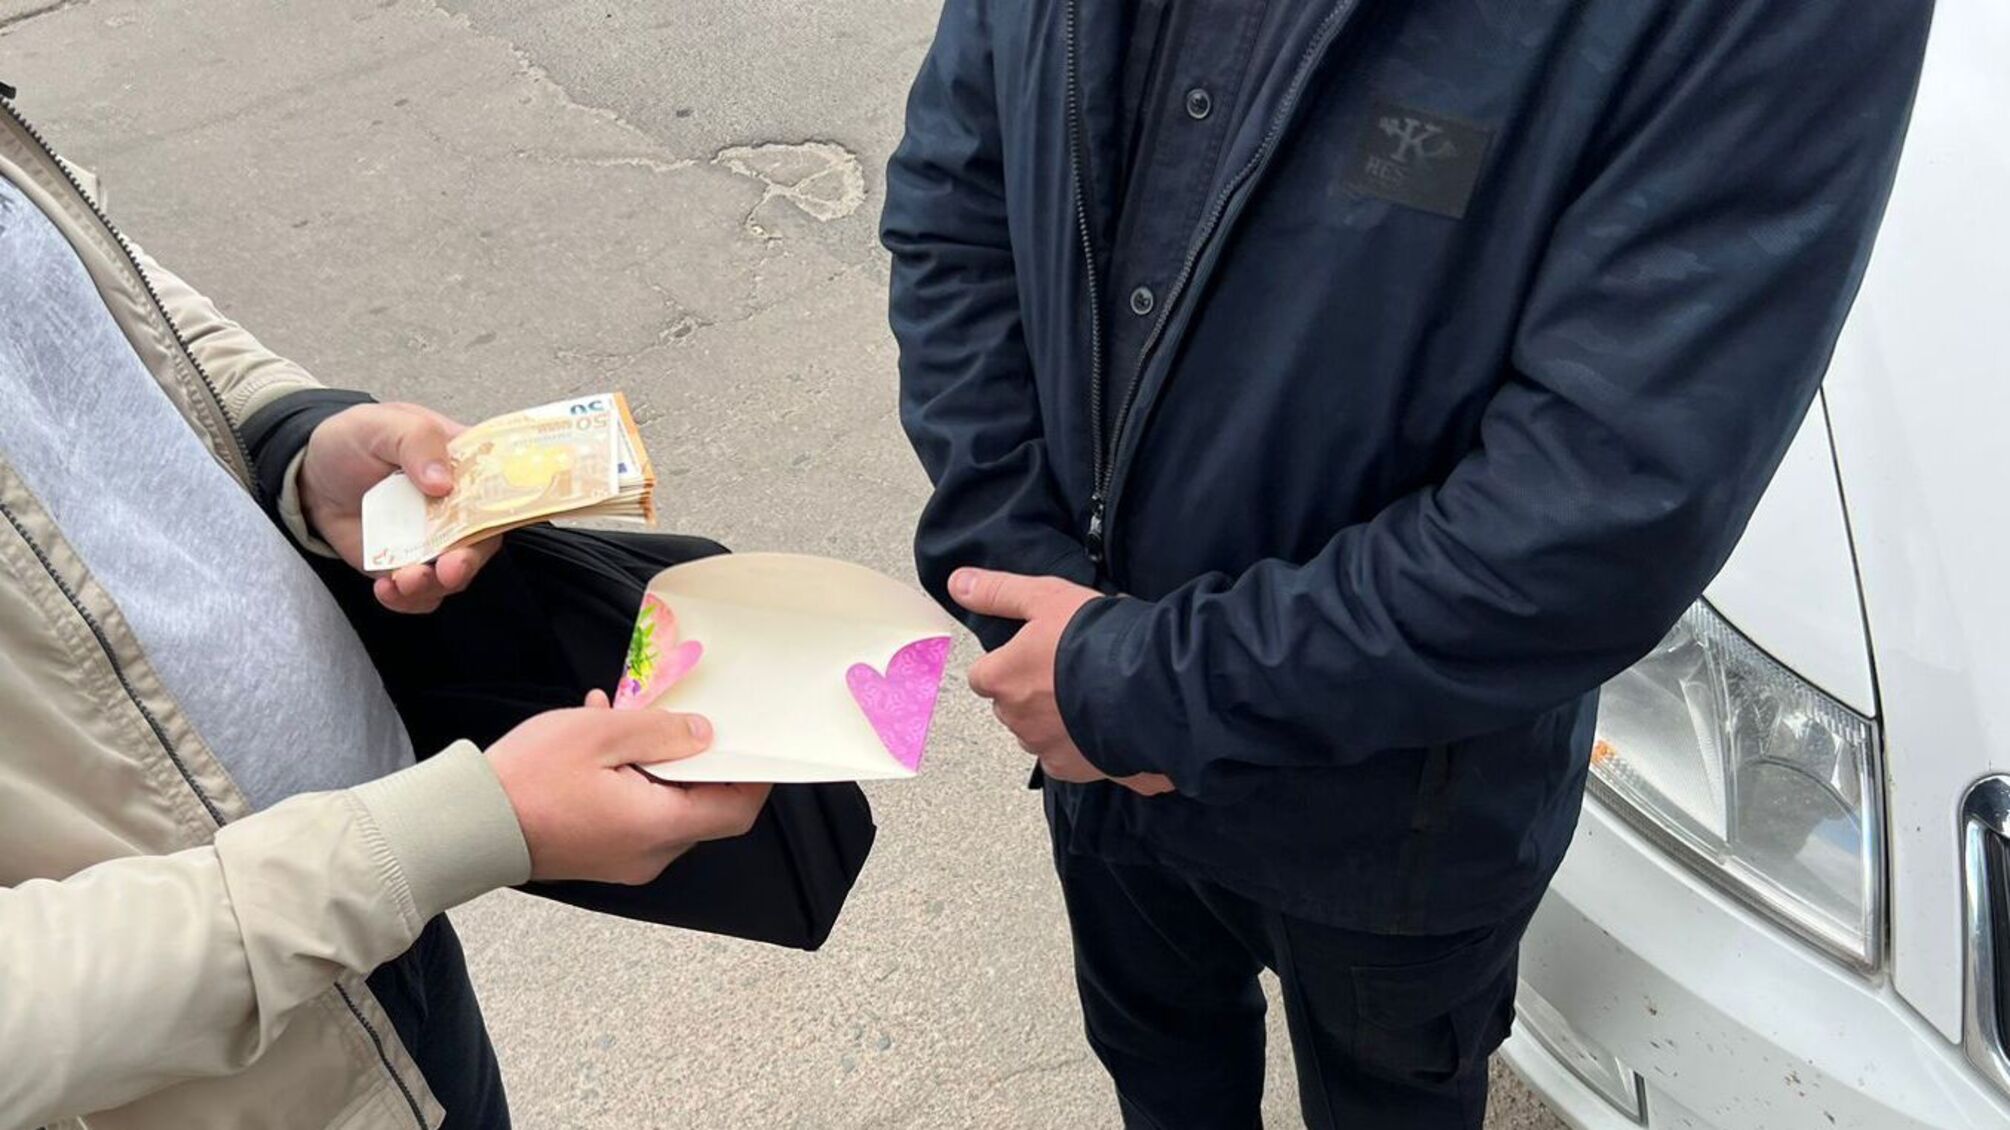 Намагався 'допомогти' сину: на Чернігівщині затримали чоловіка, який хотів підкупити поліцейського